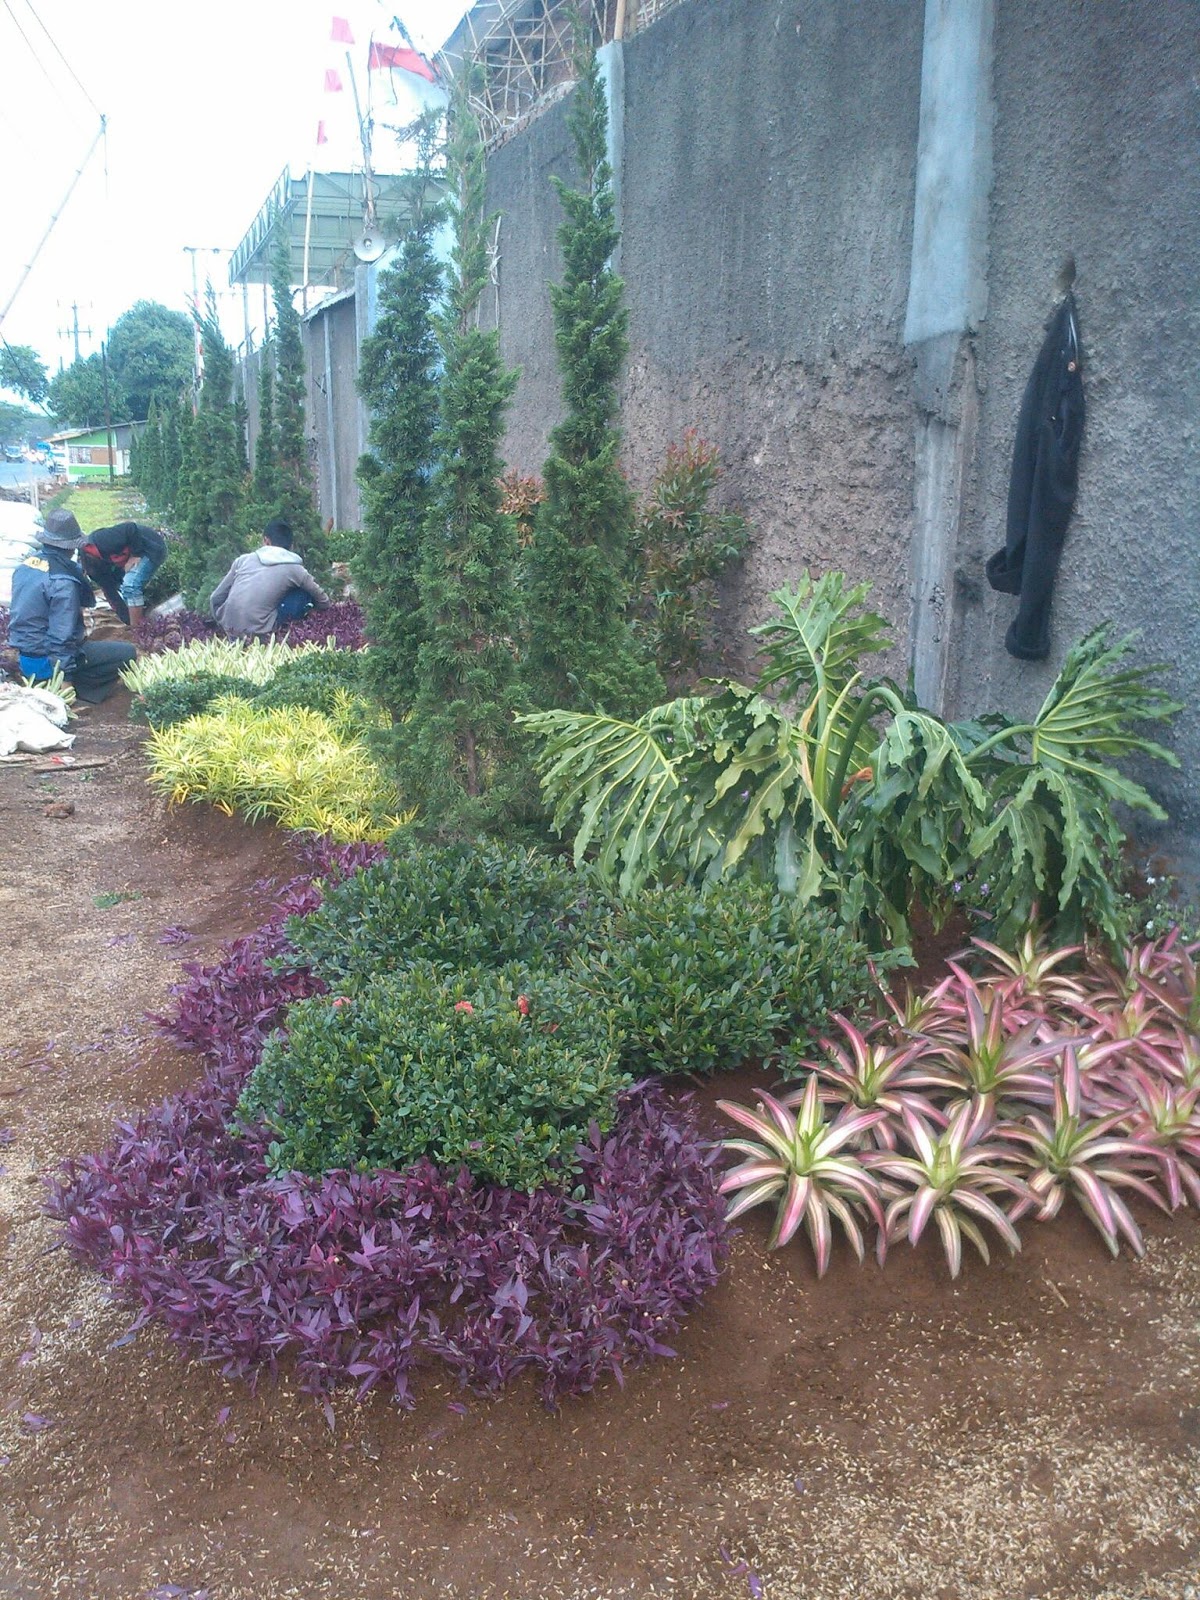 Jasa Tukang Taman Bandung Toko Bunga Kurnia Florist